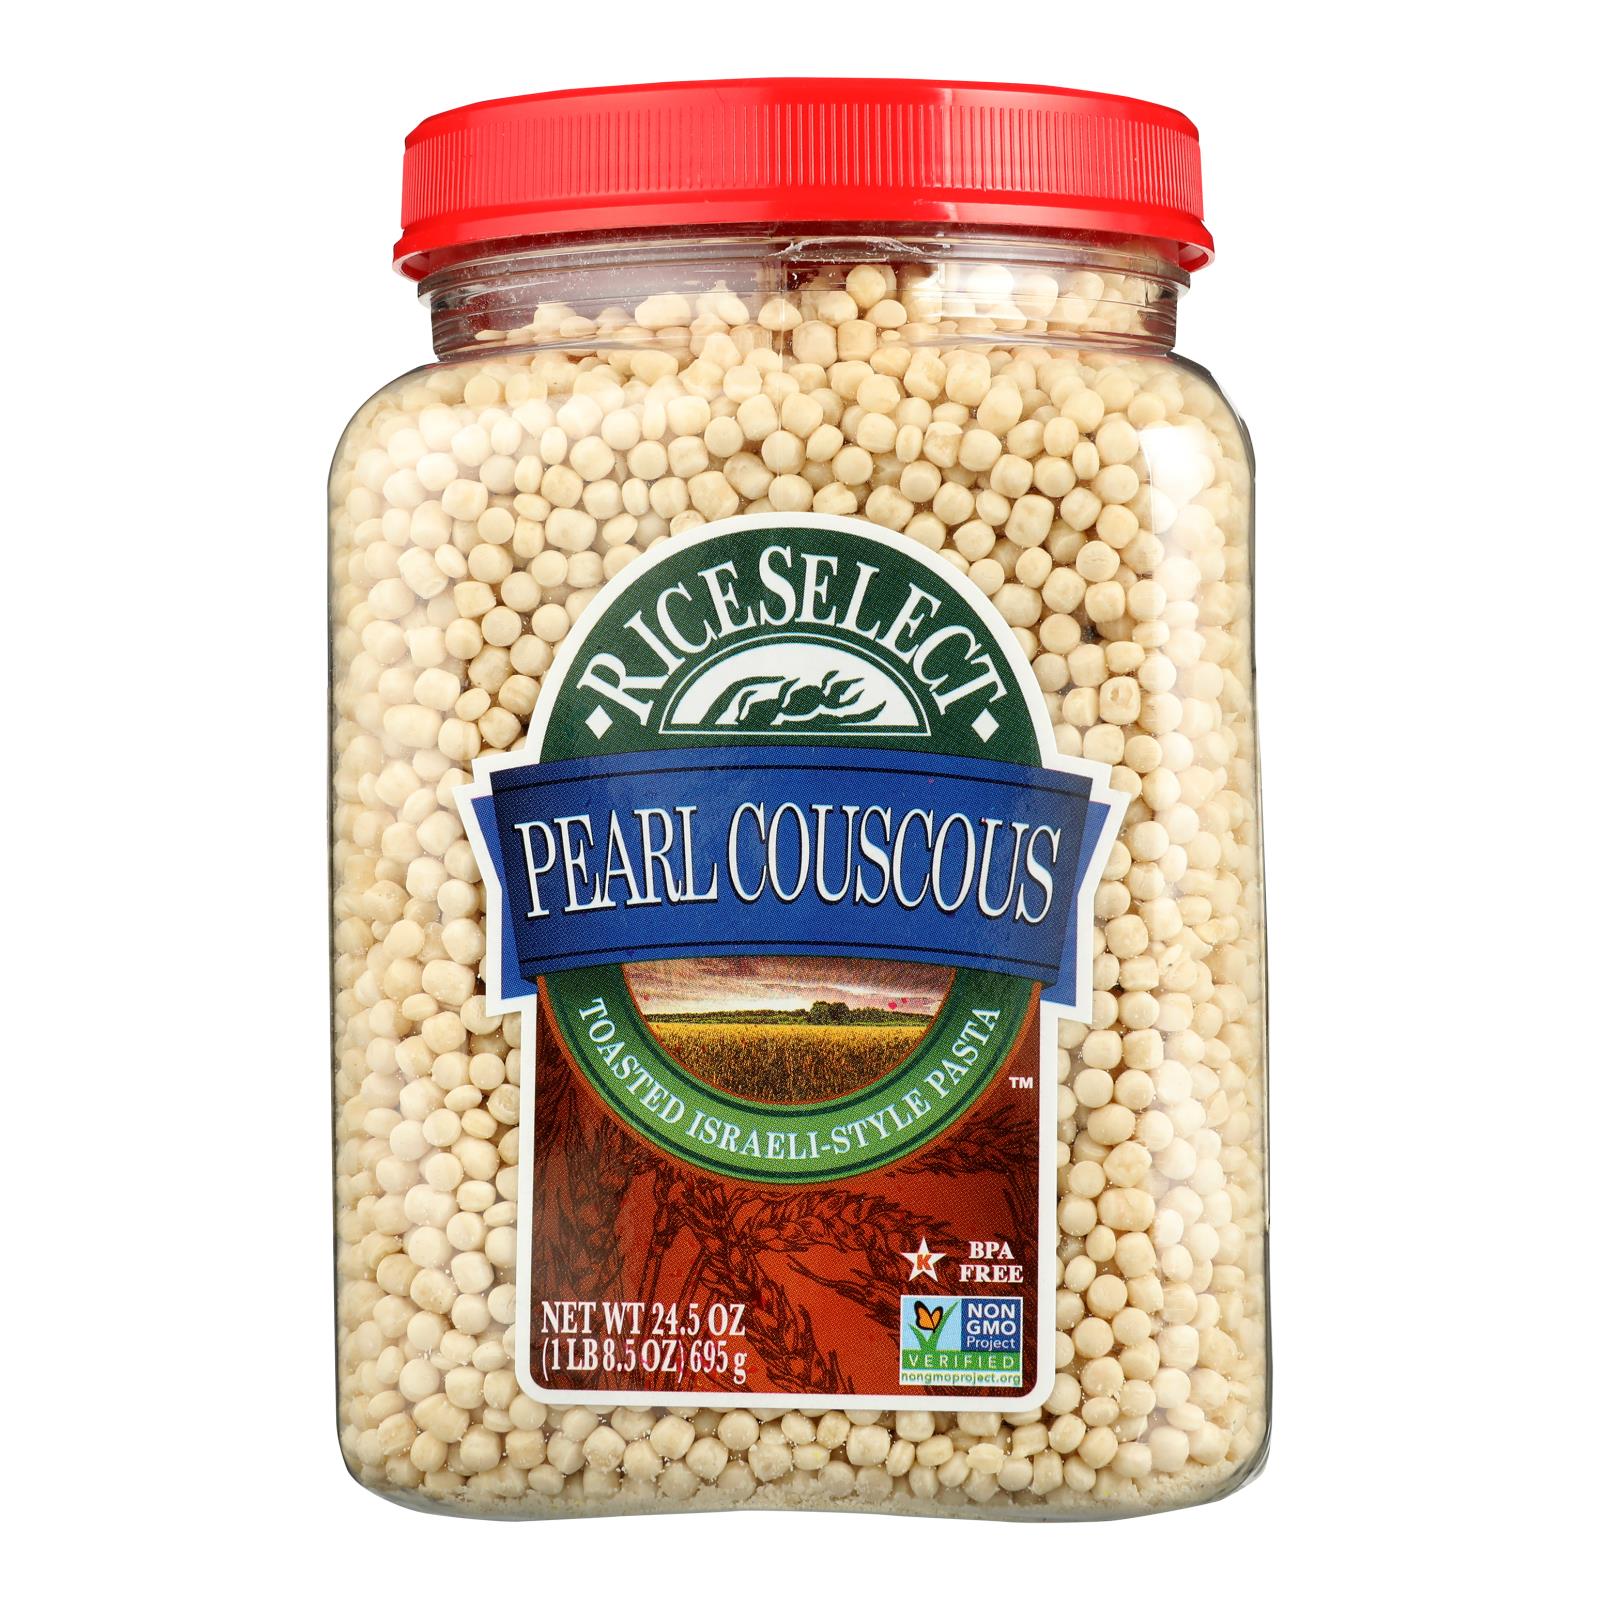 Rice Select Couscous - Pearl - Original Plain - Case Of 4 - 25.5 Oz